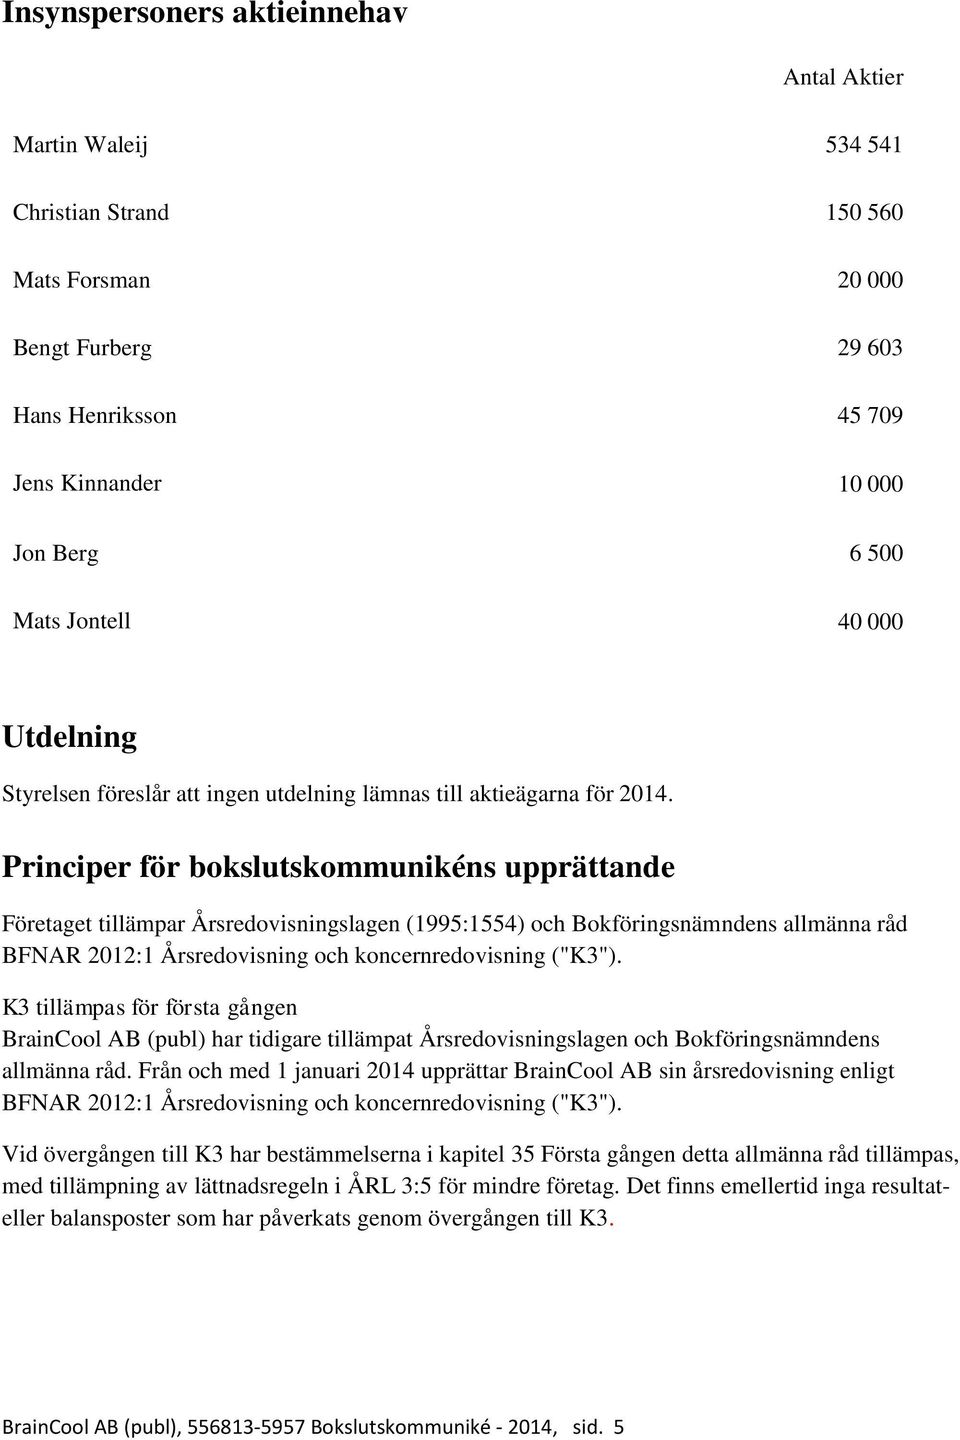 Principer för bokslutskommunikéns upprättande Företaget tillämpar Årsredovisningslagen (1995:1554) och Bokföringsnämndens allmänna råd BFNAR 2012:1 Årsredovisning och koncernredovisning ("K3").